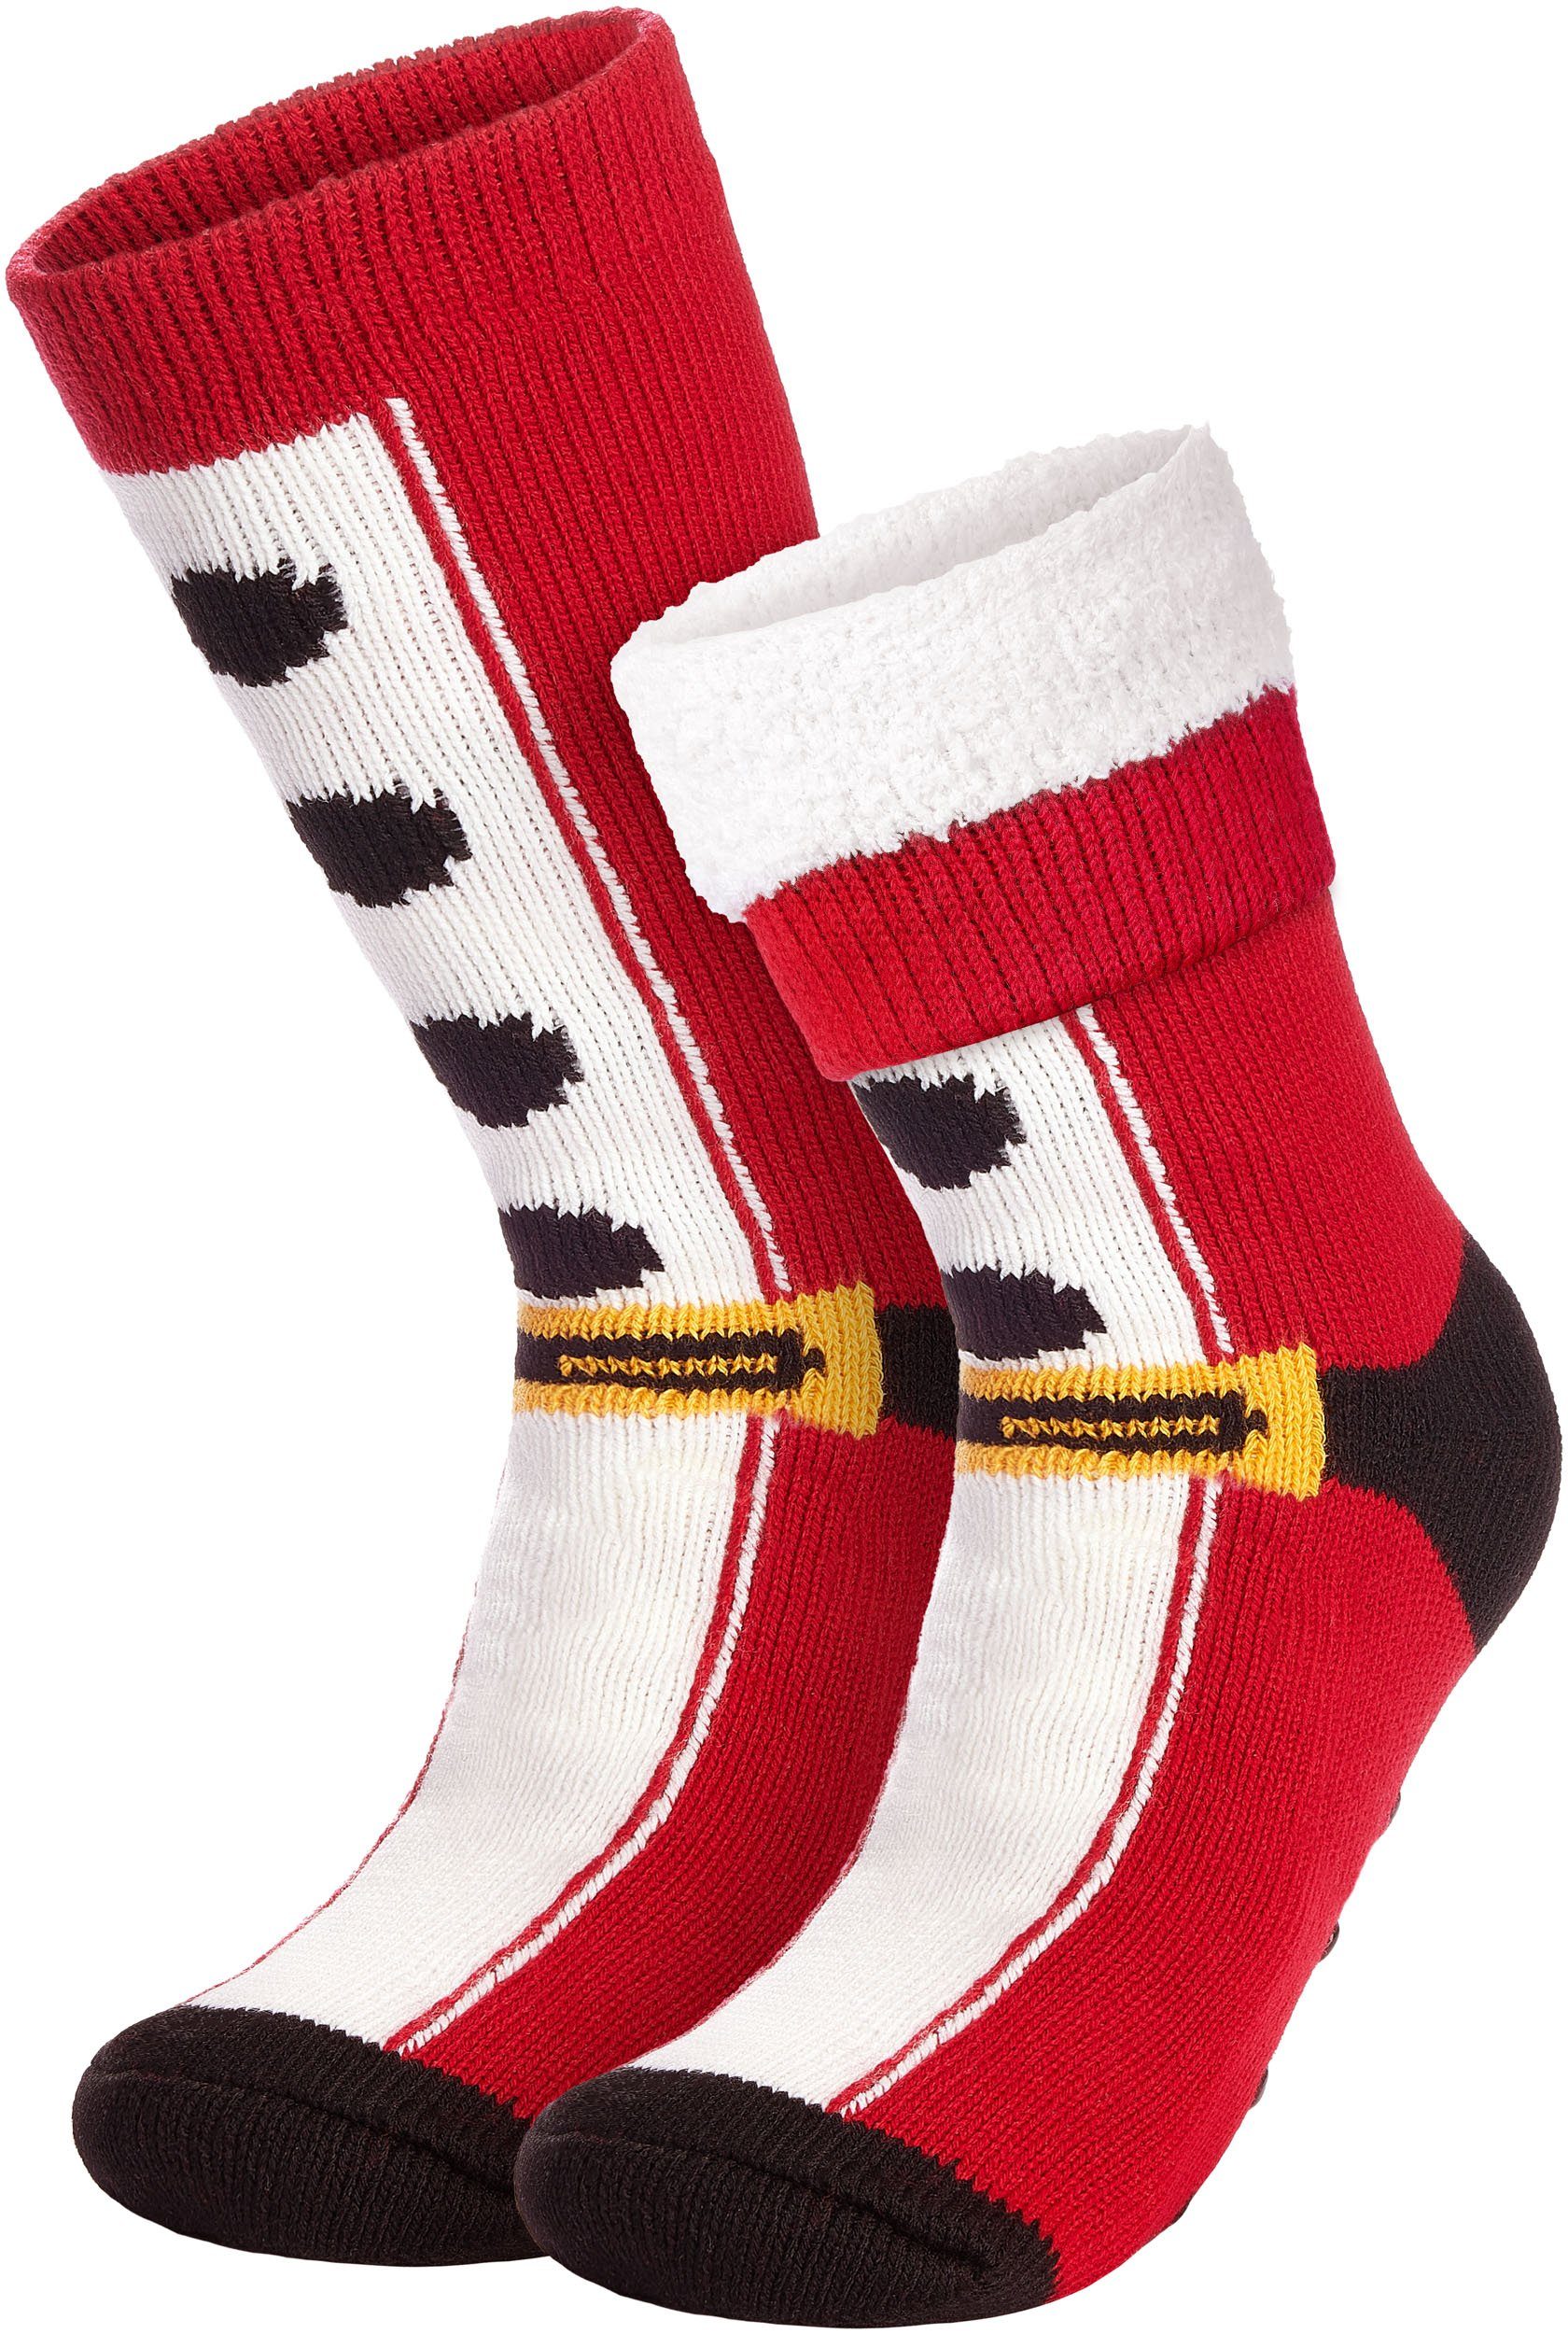 ABS-Socken (1-Paar, Bettsocken) Socken Stoppersocken - Warme Mädchen Frauen Dicke Kuschelsocken BRUBAKER Weihnachtssocken Damen Weihnachten - für Wintersocken Antirutschsocken